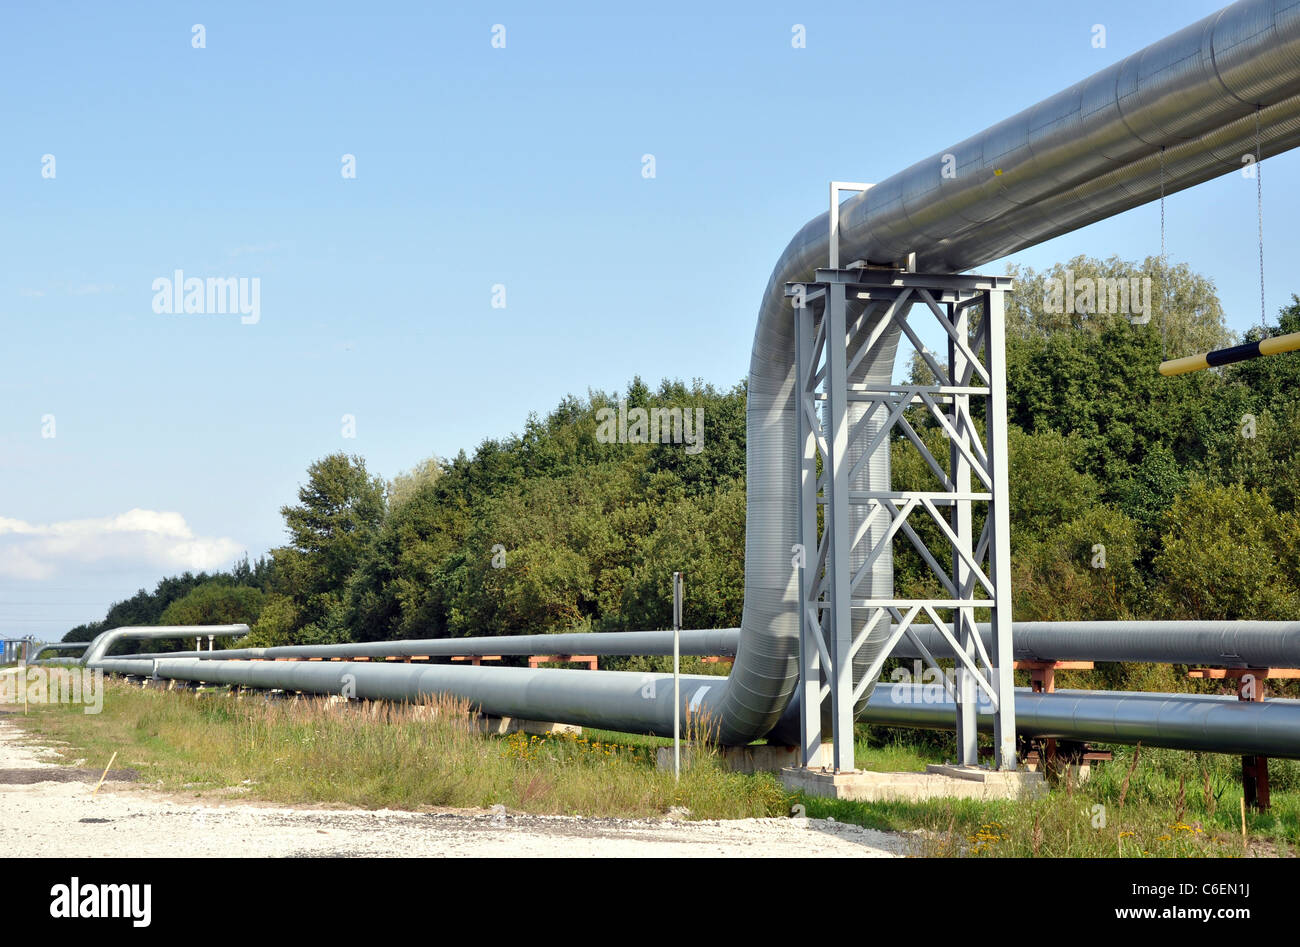 Die lange Pipeline auf dem Hintergrund des blauen Himmels Stockfoto